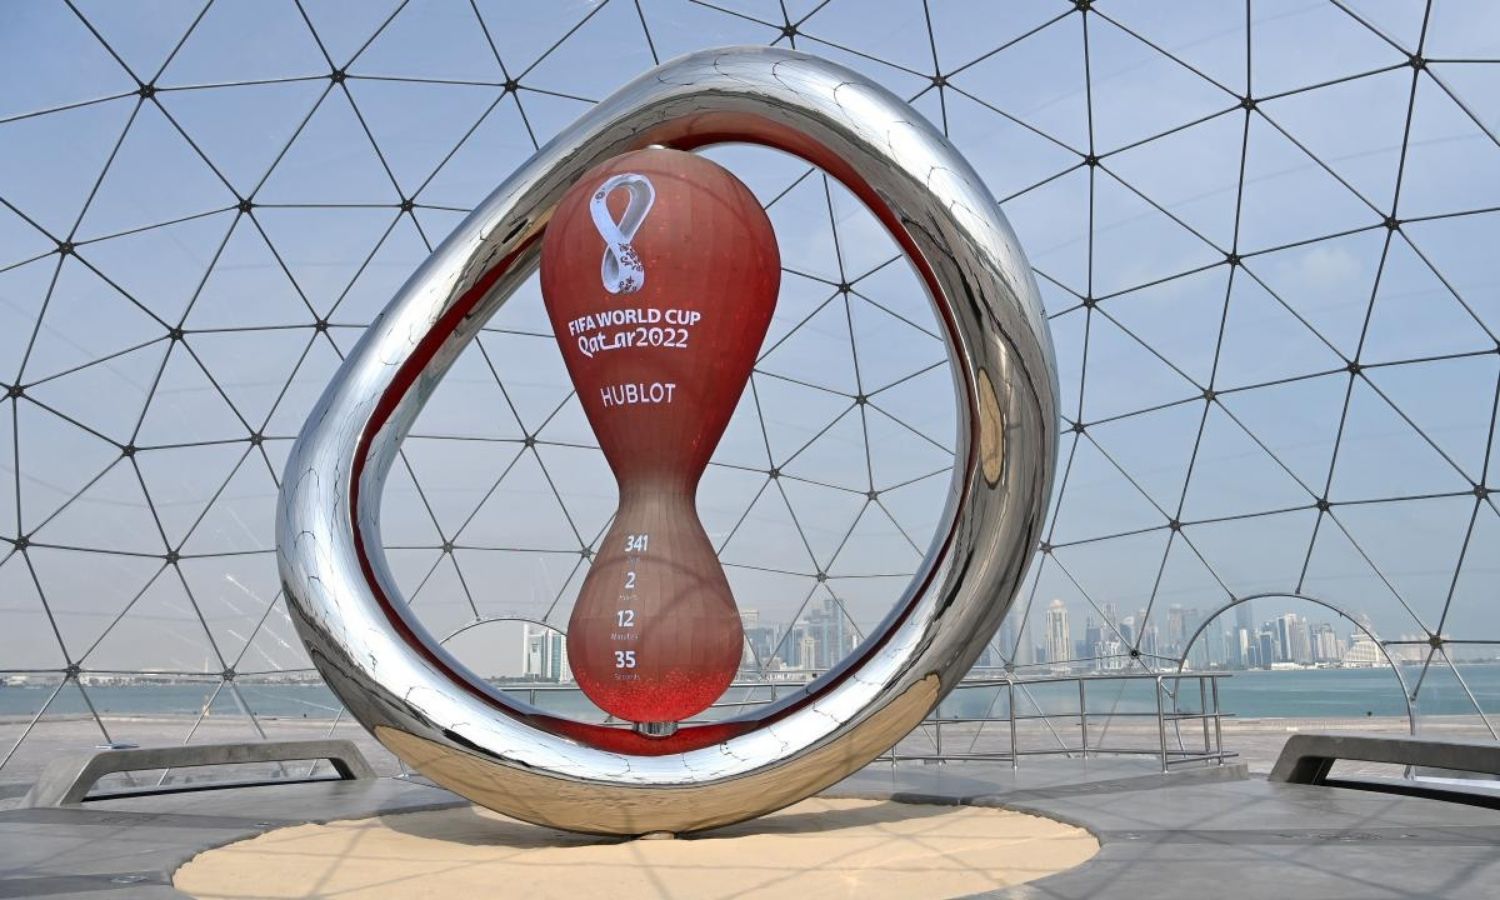 ساعة العد التنازلي الرسمية لكأس العالم في قطر 2022- كورنيش الدوحة (getty images)